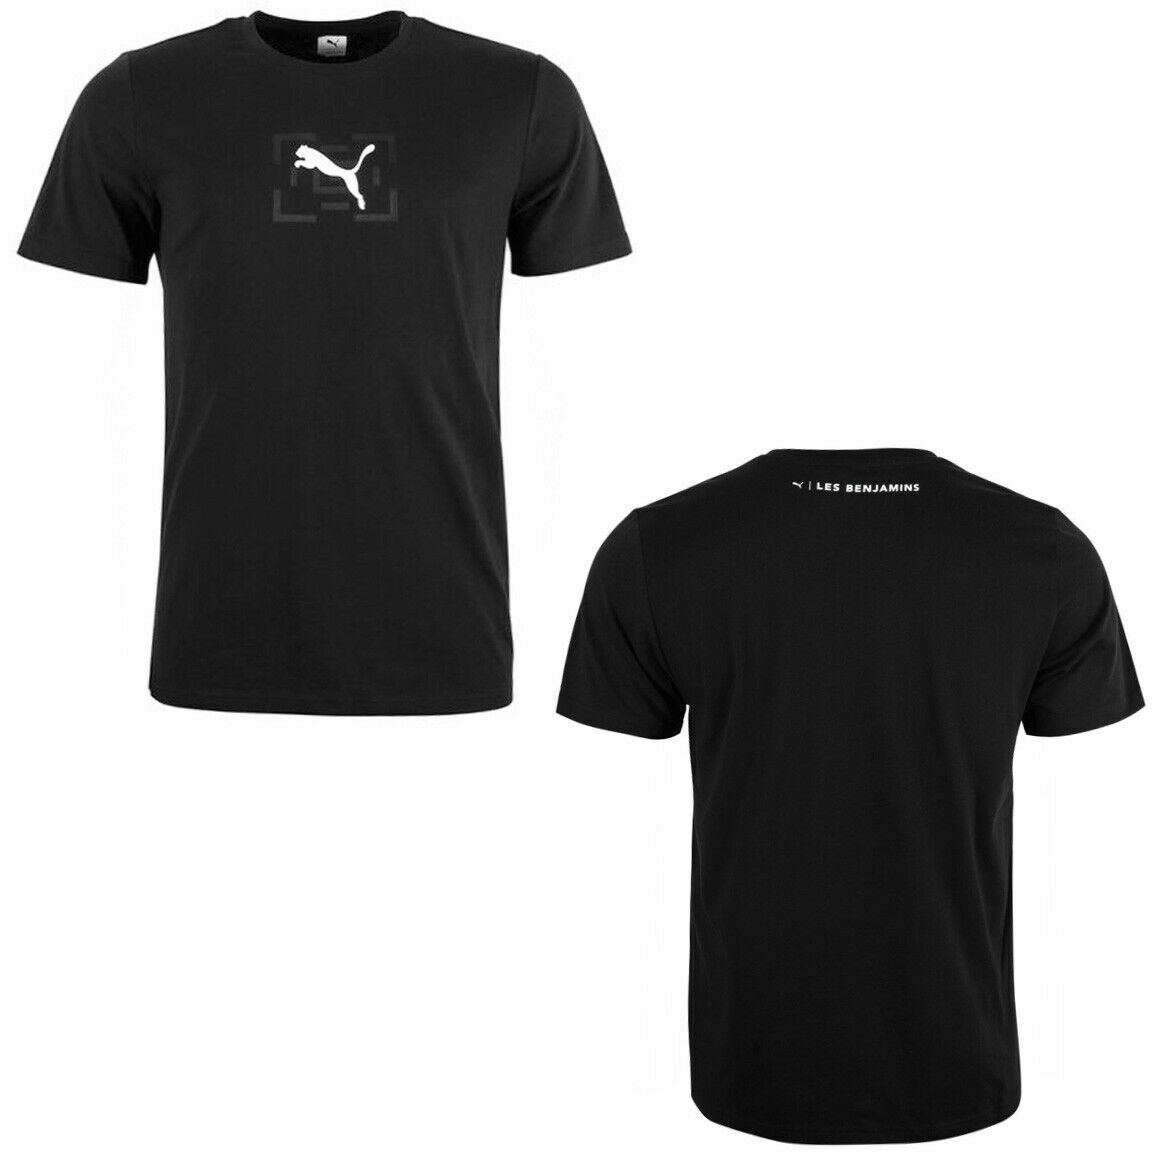 Puma x Les Benjamins Logo T-Shirt Casual Graphic Mens Top Black 578532 01